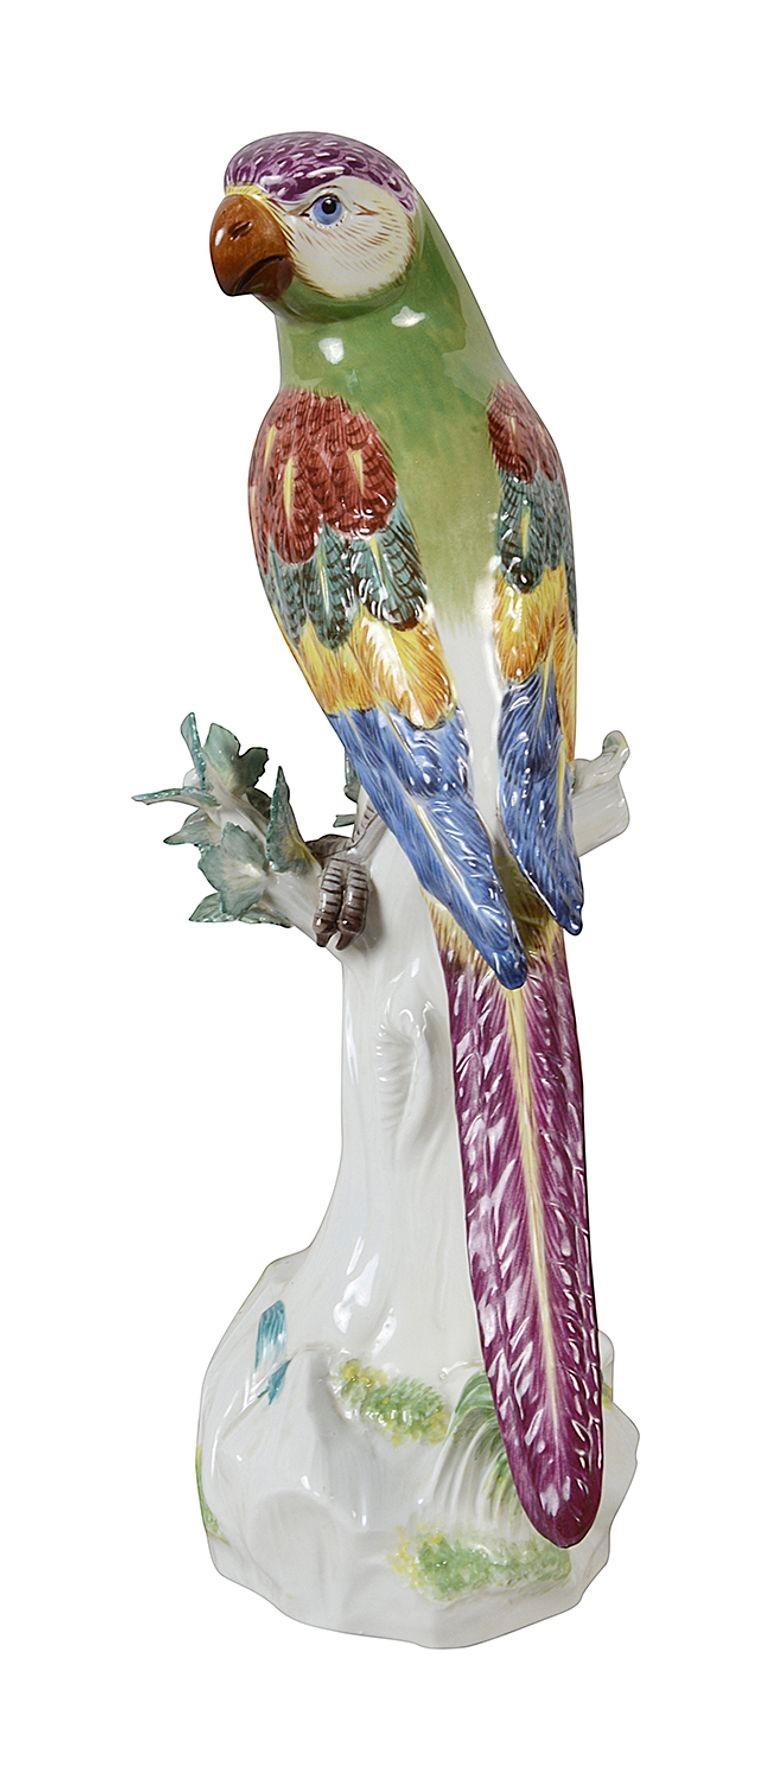 Perroquet perché sur un tronc d'arbre en porcelaine de Meissen de belle qualité datant de la fin du 19e siècle, avec de magnifiques couleurs vives.
Signé à la base avec des épées croisées bleues.

Lot 77 62748 DNKZZ